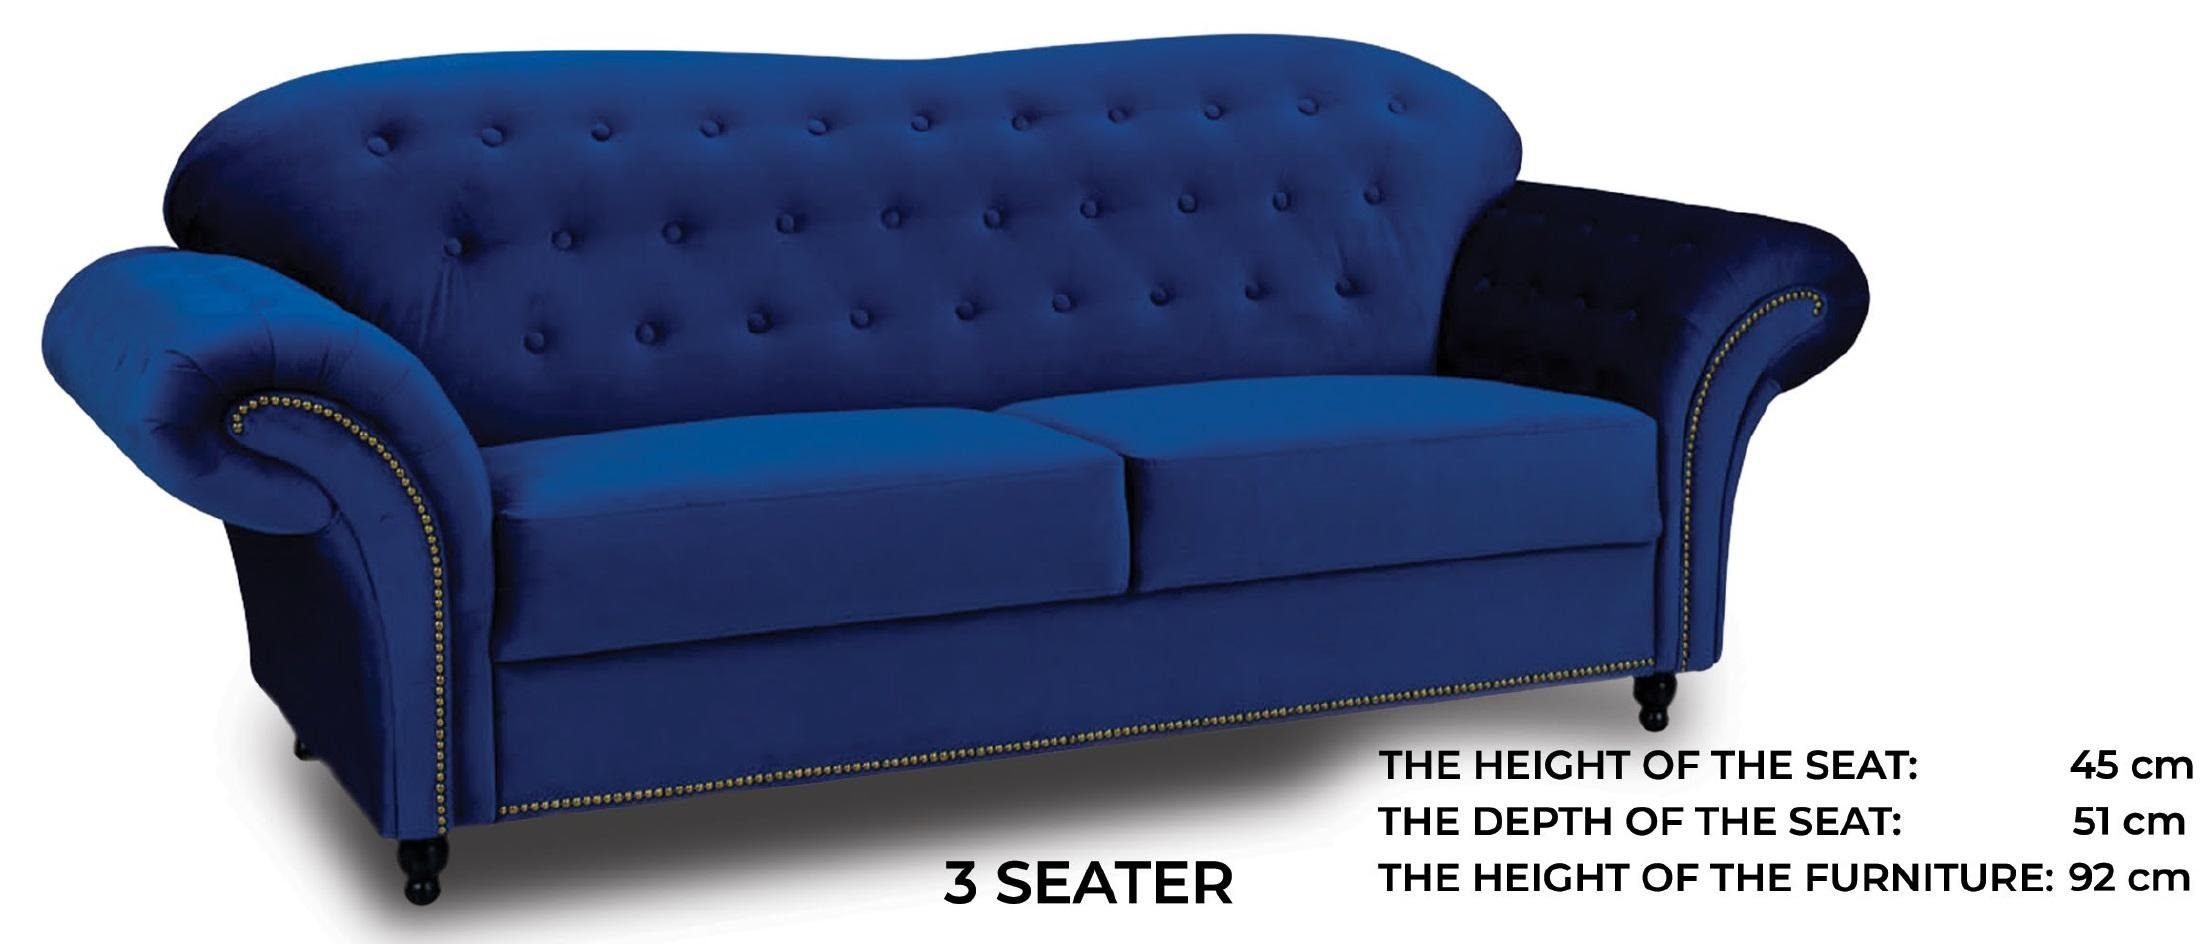 Exklusiver Verkauf JVmoebel Sofa Blauer luxus Chesterfield Nieten Dreisitzer in Europe Made Neu, mit Polster